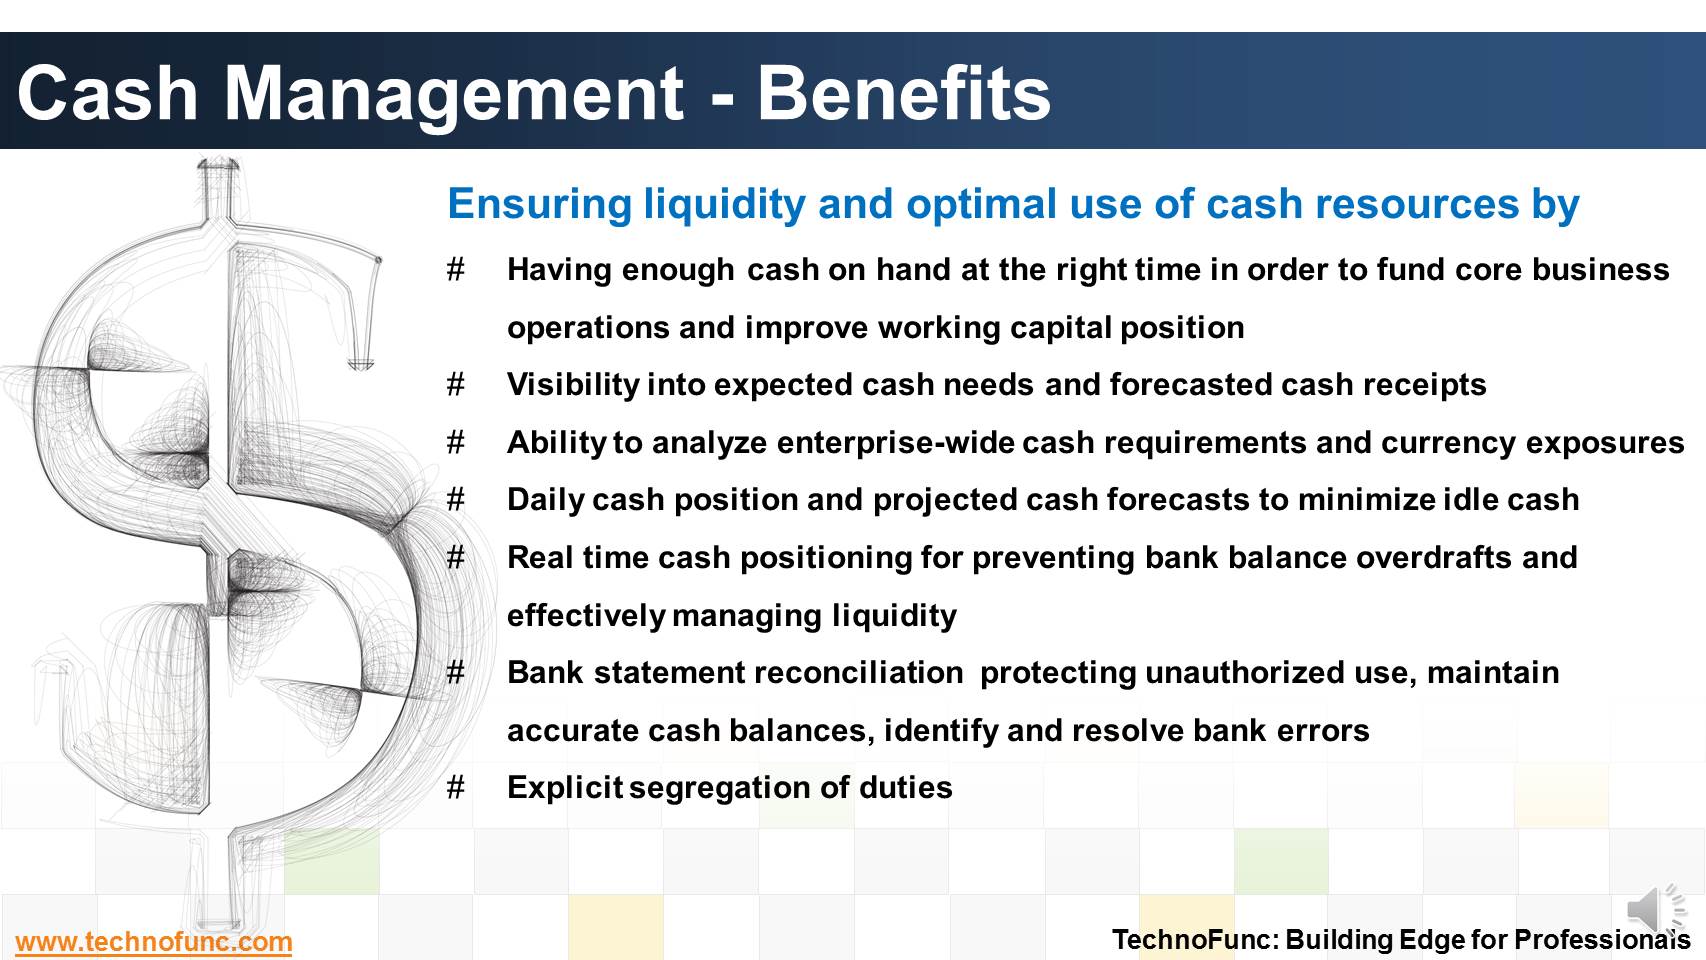 Cash Management - Benefits